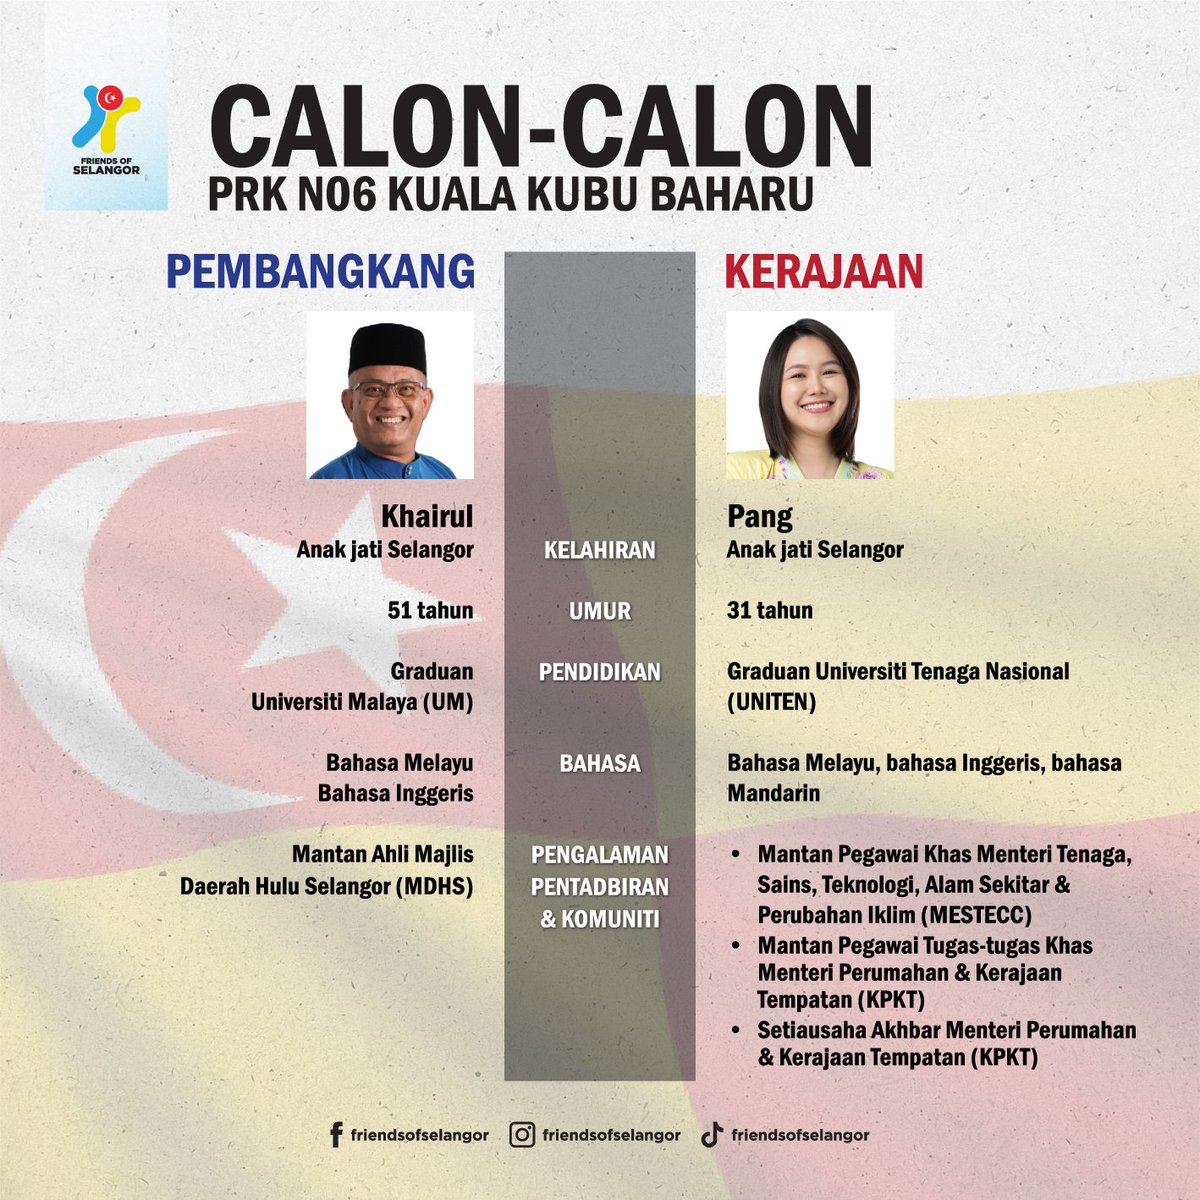 PDTSS (Pilihan di tangan saudara saudari)

Berikut adalah calon yang ditawar oleh pembangkang dan kerajaan dalam Pilihan Raya Kecil N06, Kuala Kubu Baharu.

#KitaSelangor 
#FriendsOfSelangor